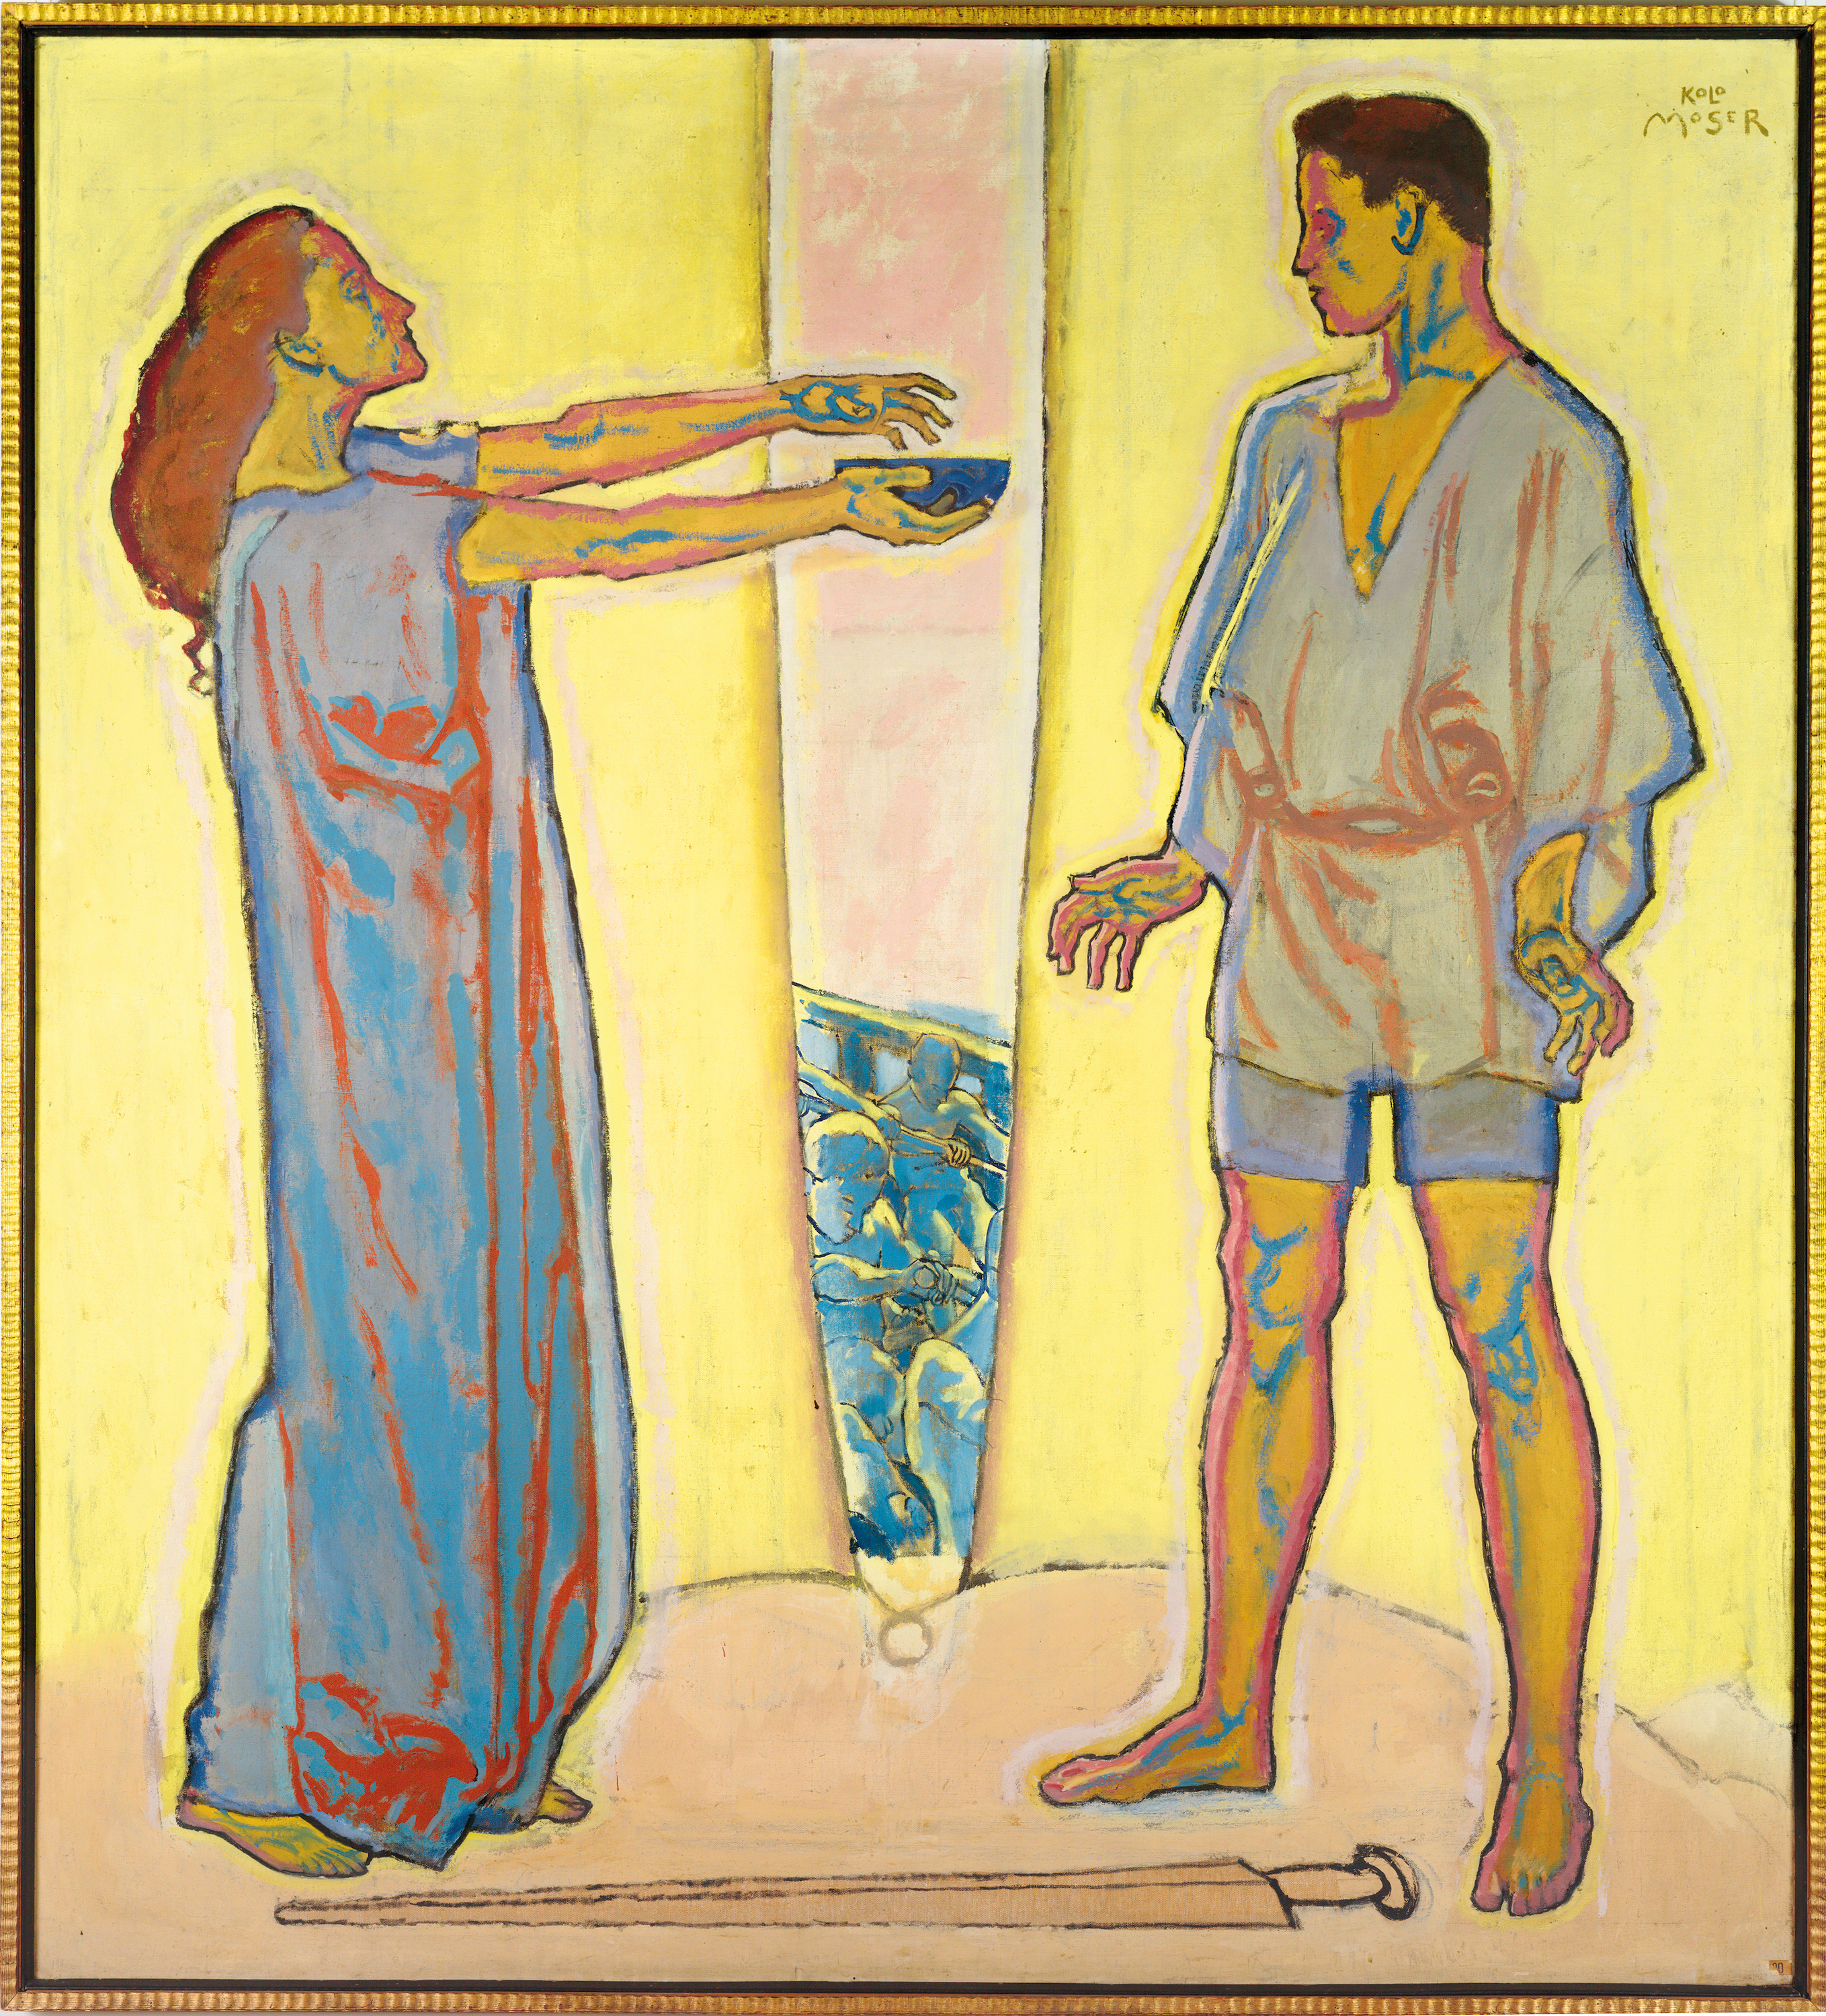 사랑의 묘약 (트리스탄과 이졸데) by Koloman Moser - 1913 - 195 x 210 cm 